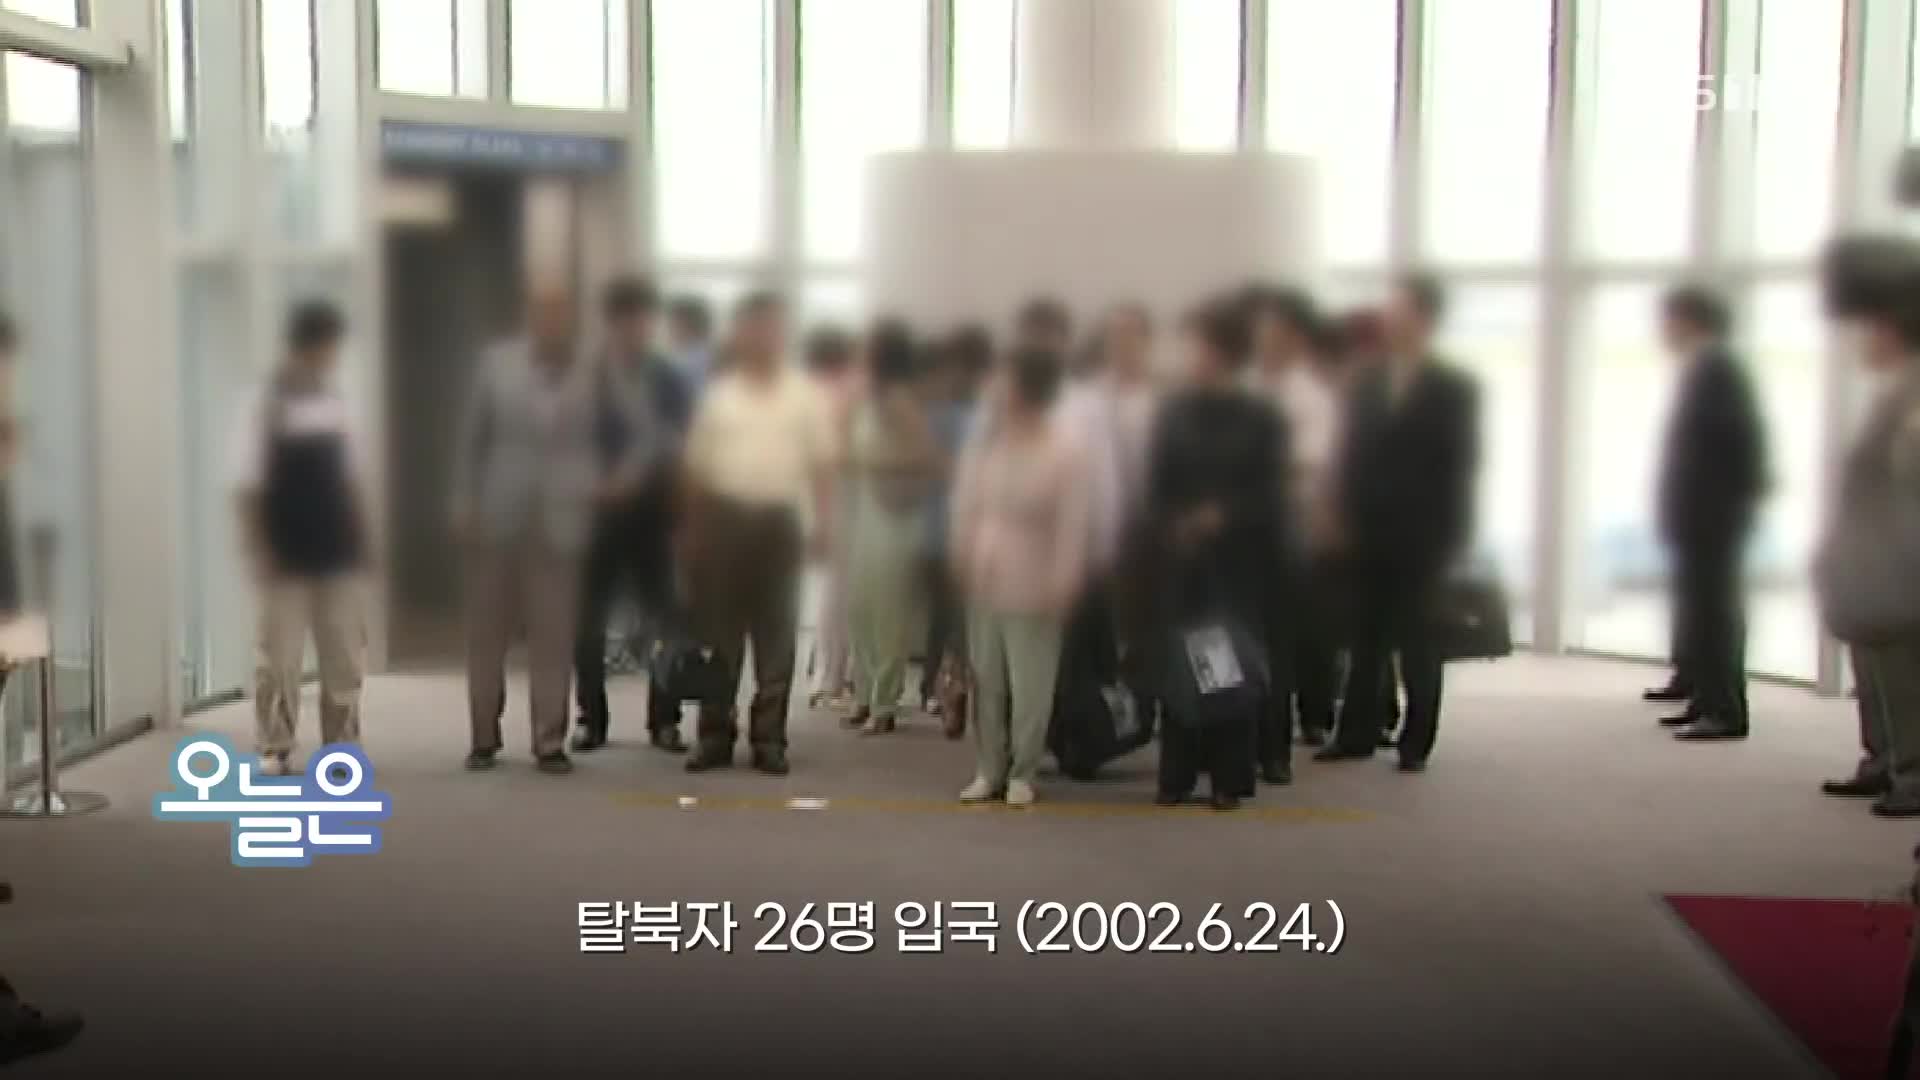 [오늘은] 탈북자 26명 입국 (2002.6.24.)